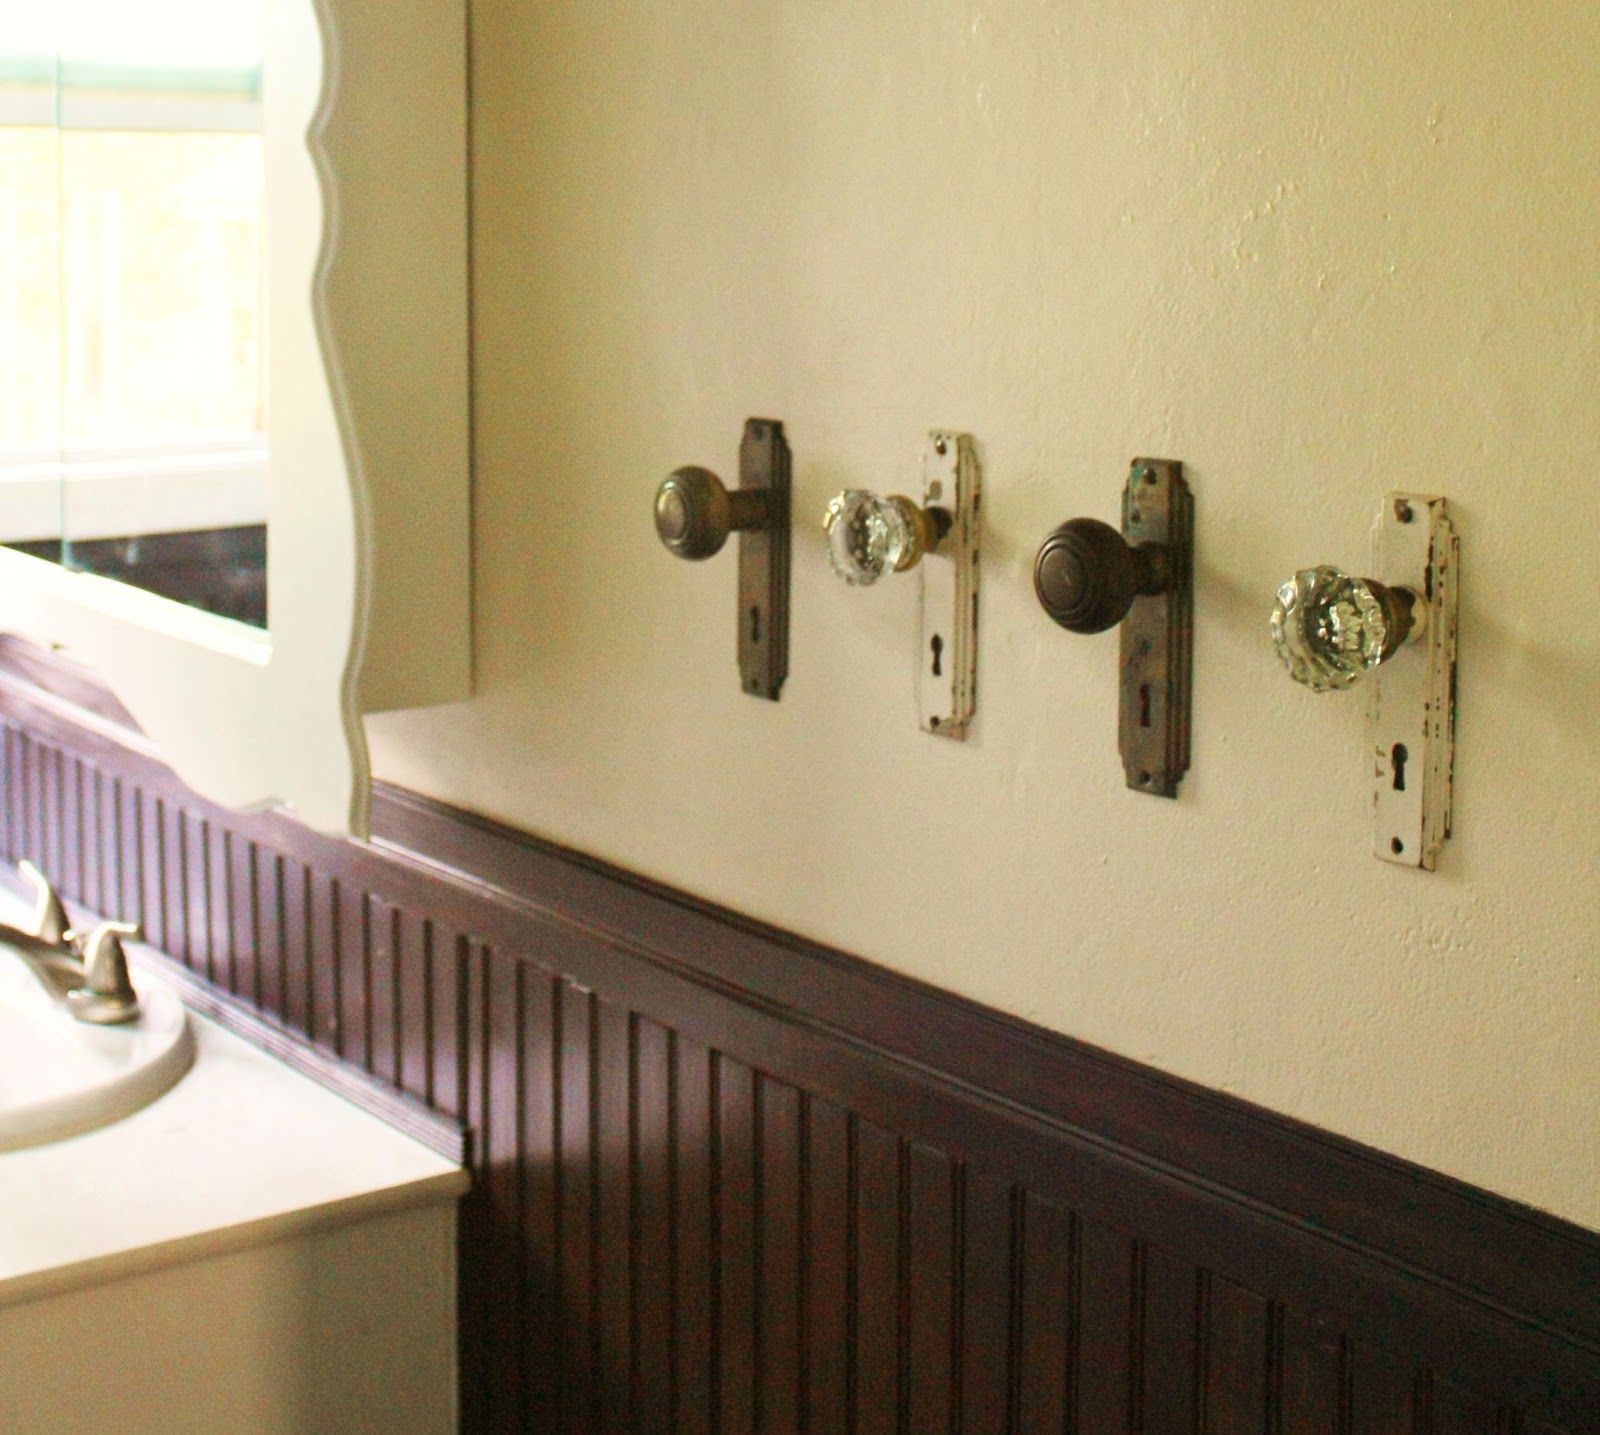 Old door knobs to hang towels